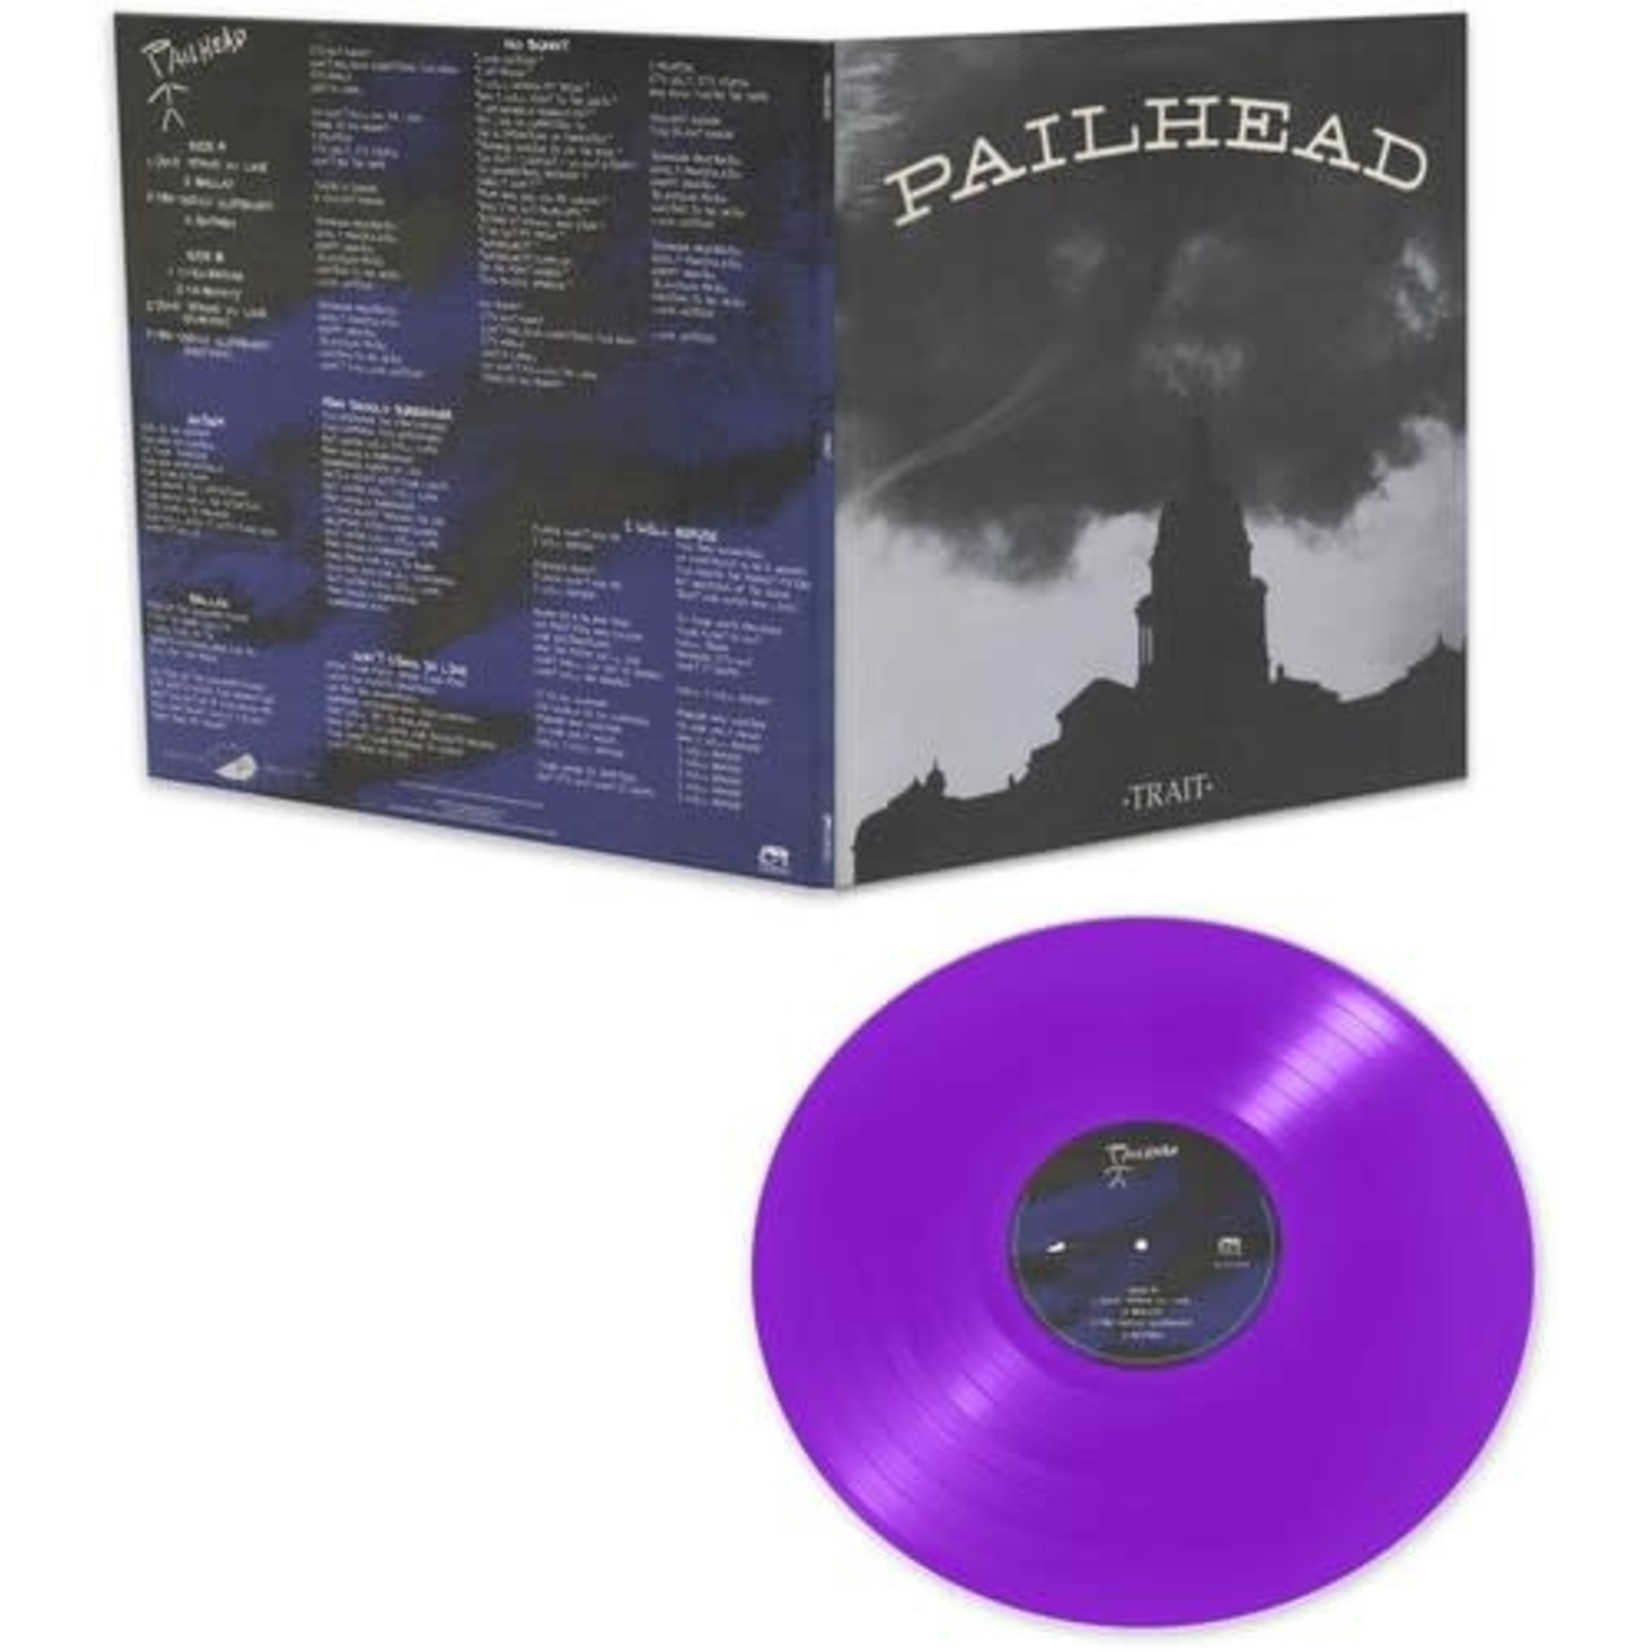 Cleopatra Pailhead - Trait (LP) [Purple]